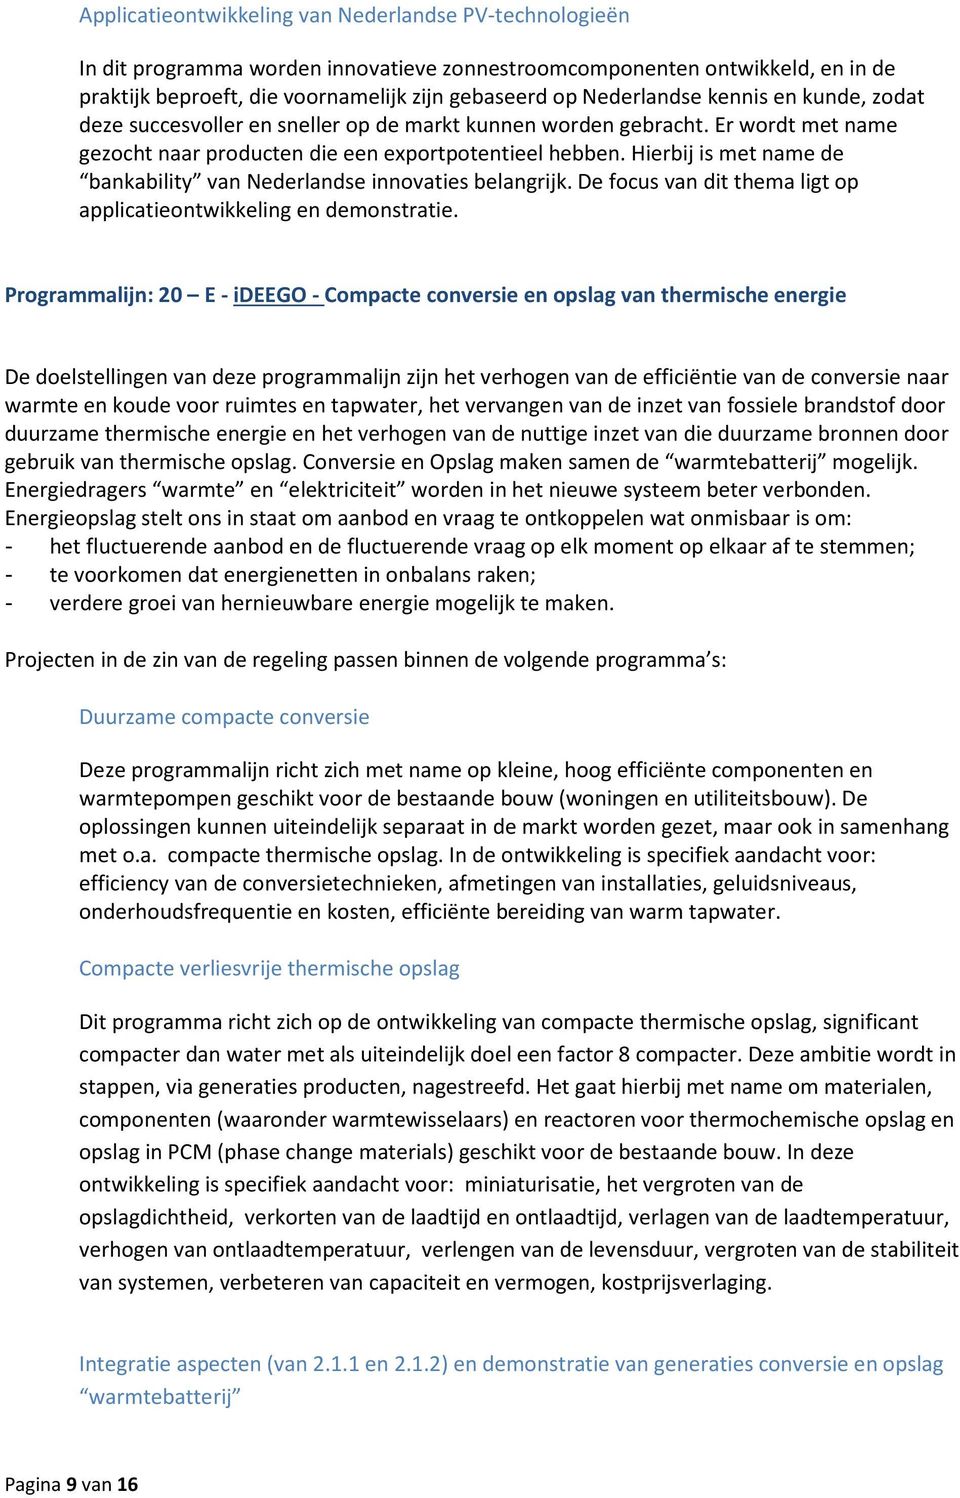 Hierbij is met name de bankability van Nederlandse innovaties belangrijk. De focus van dit thema ligt op applicatieontwikkeling en demonstratie.